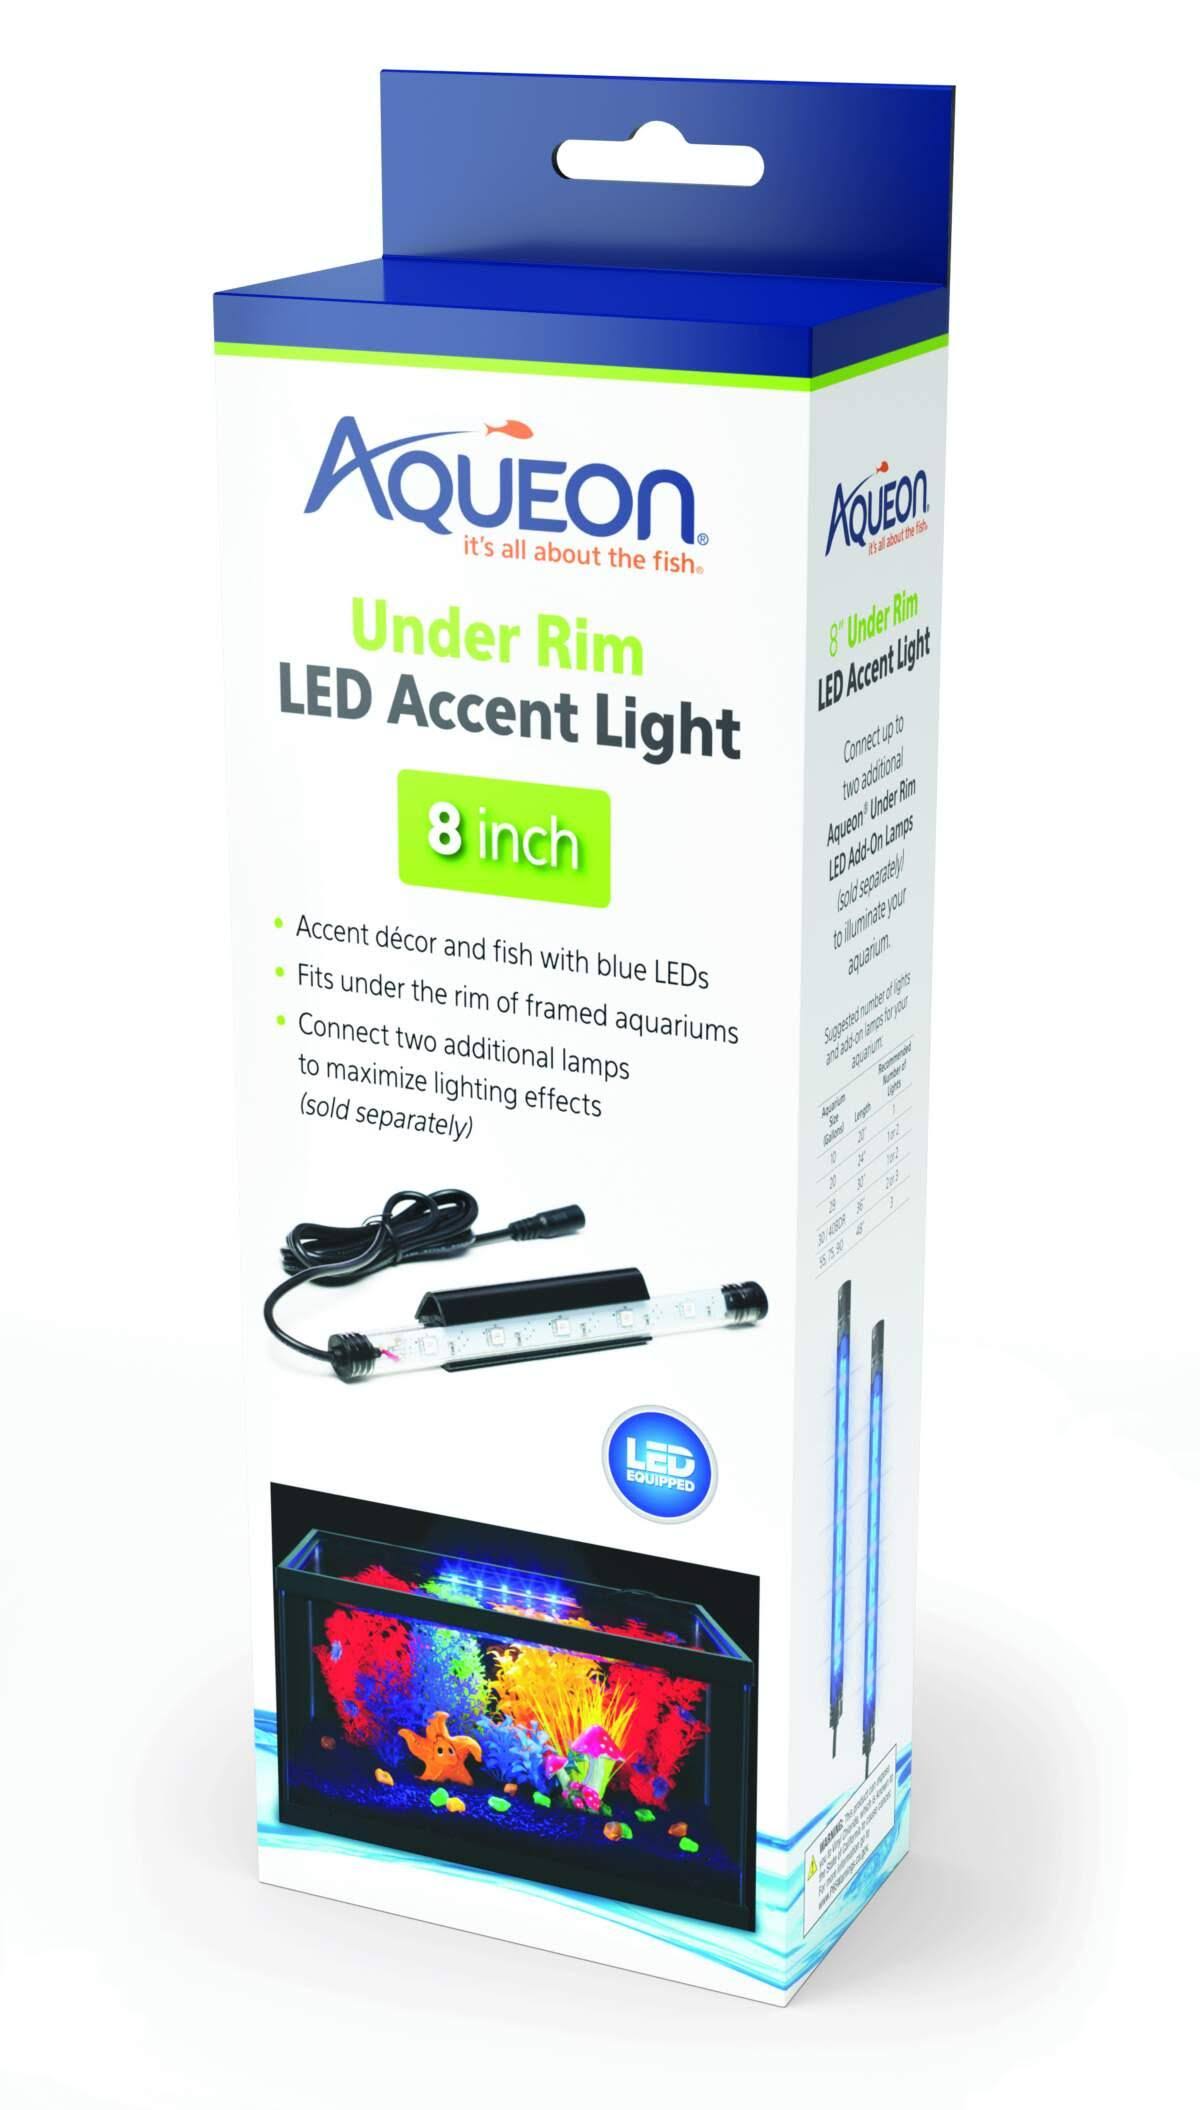 Aqueon Under Rim LED Accent Light - 8in Accent Light